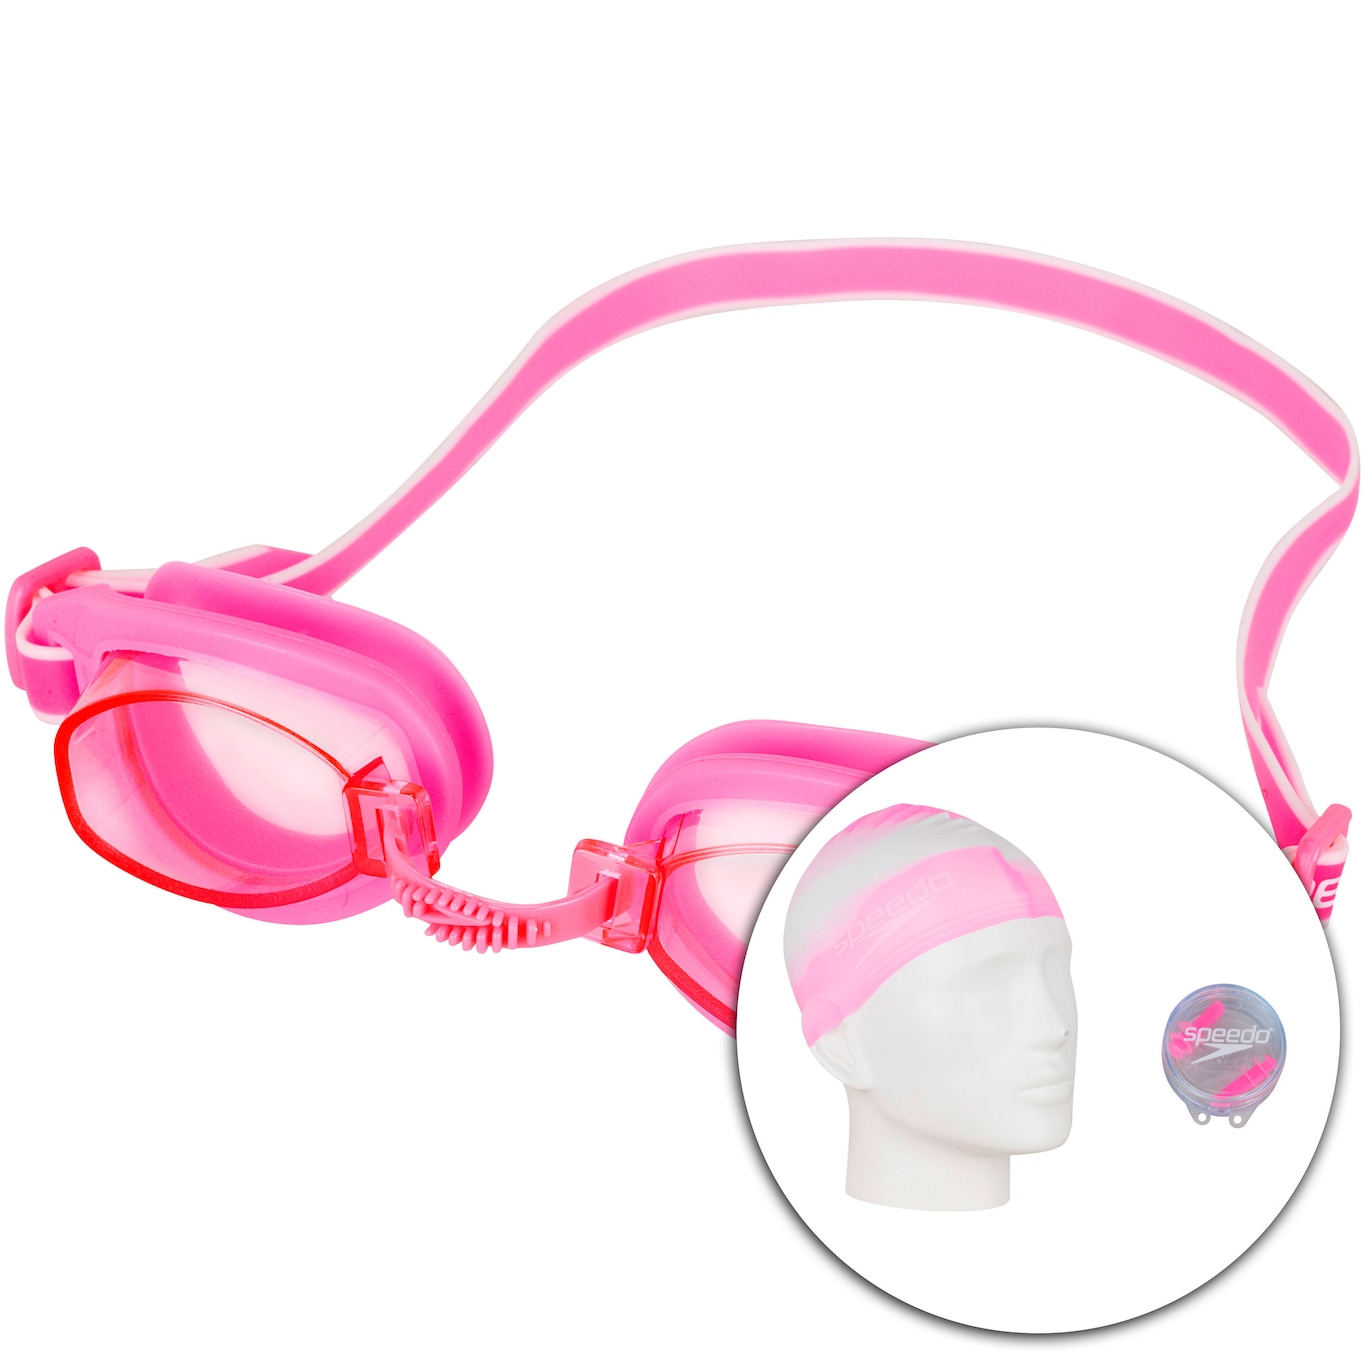 Kit de Natação Speedo Swim com Óculos + Touca + Protetor de Ouvido - Adulto - Foto 1